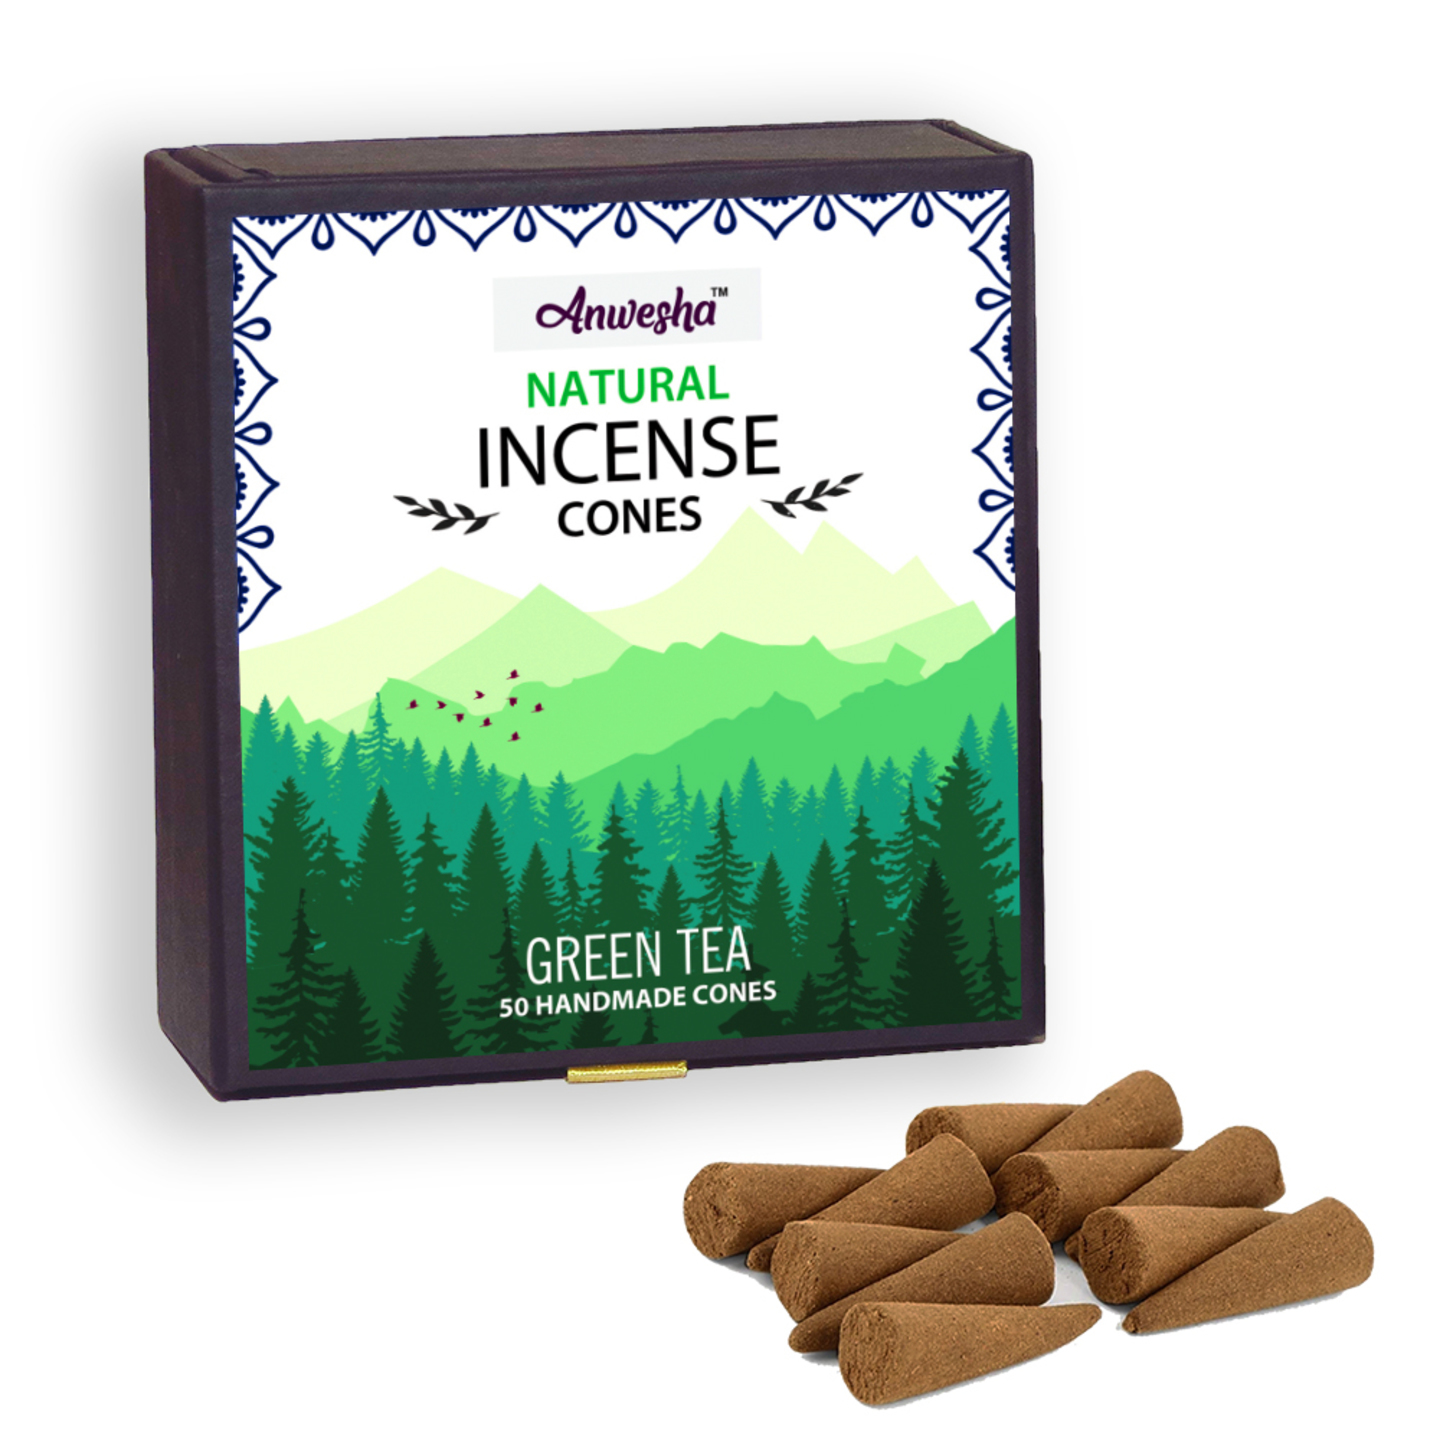 Green Tea Incense Cones Box - 50 Cones